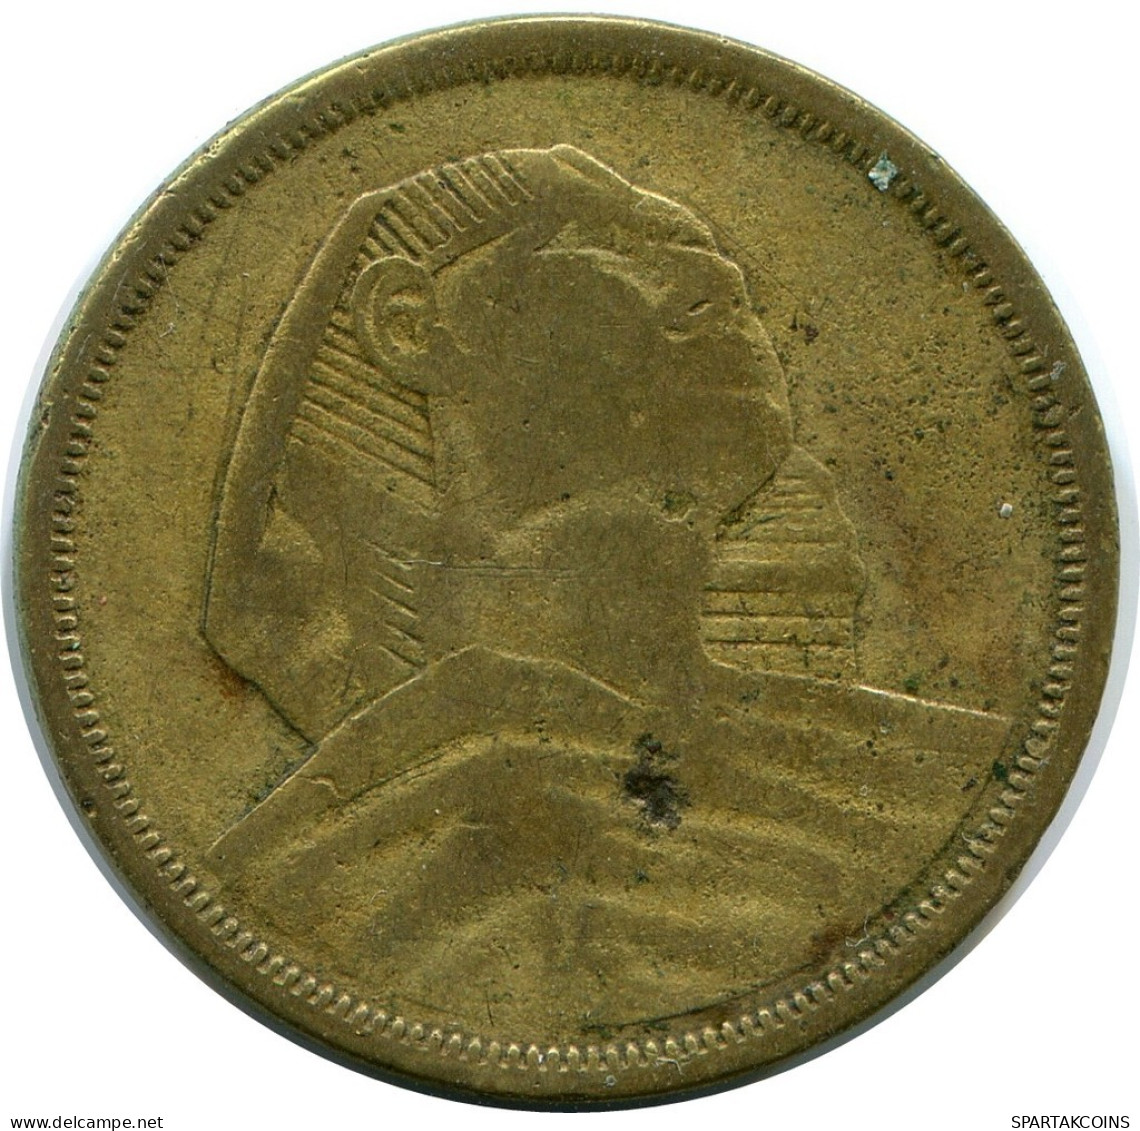 10 MILLIEMES 1957 EGYPT Islamic Coin #AP122.U.A - Egypt